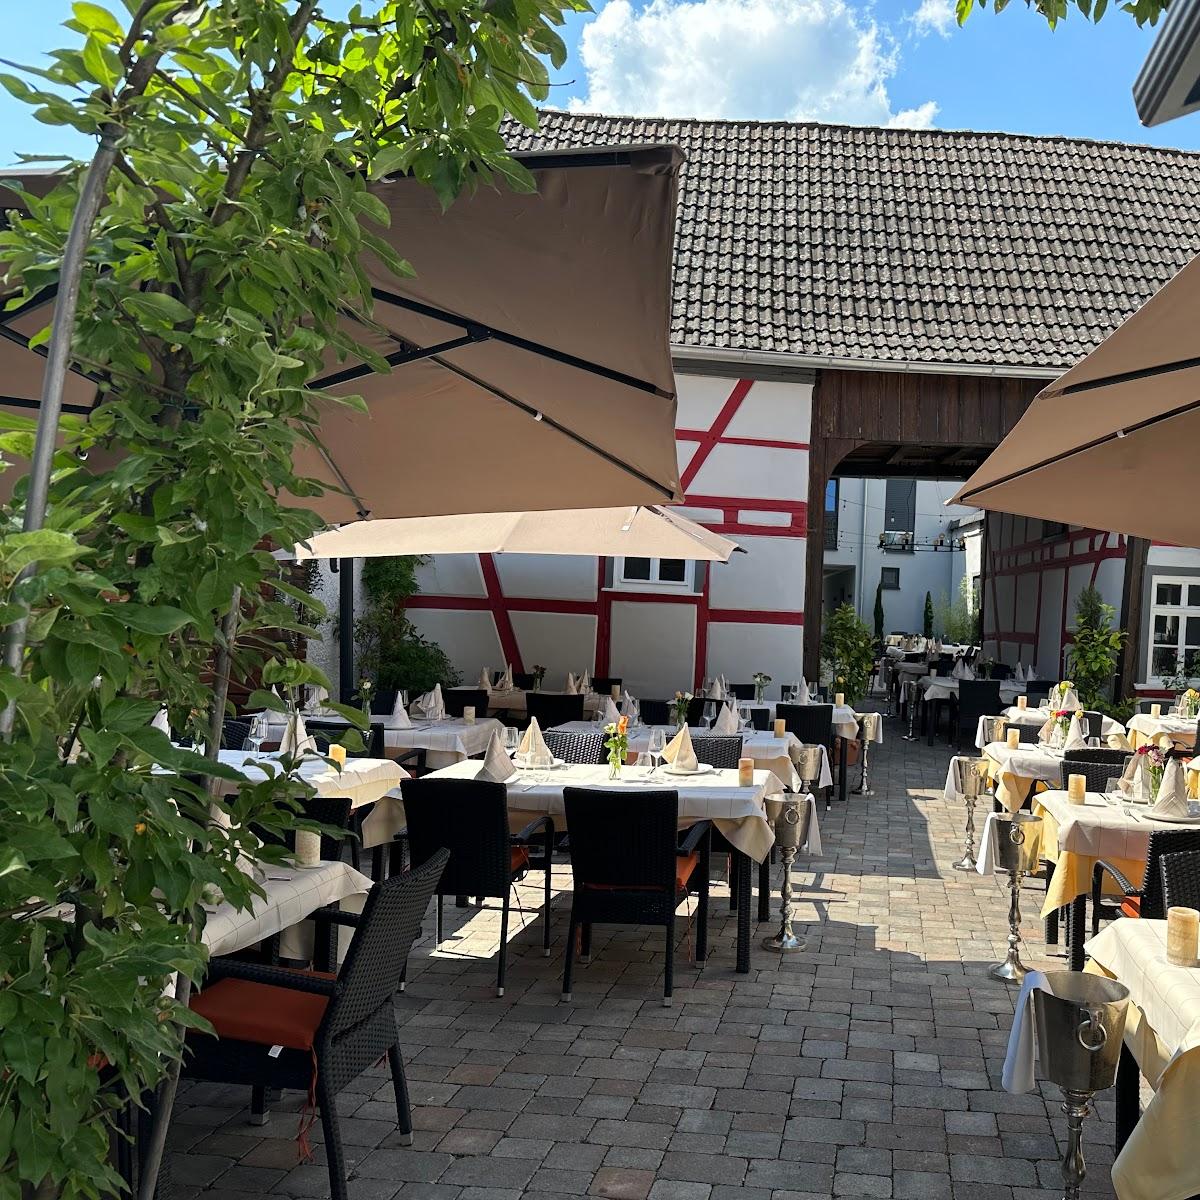 Restaurant "L Arte della Pasta Ristorante Da Lorenzo" in Friedrichsdorf